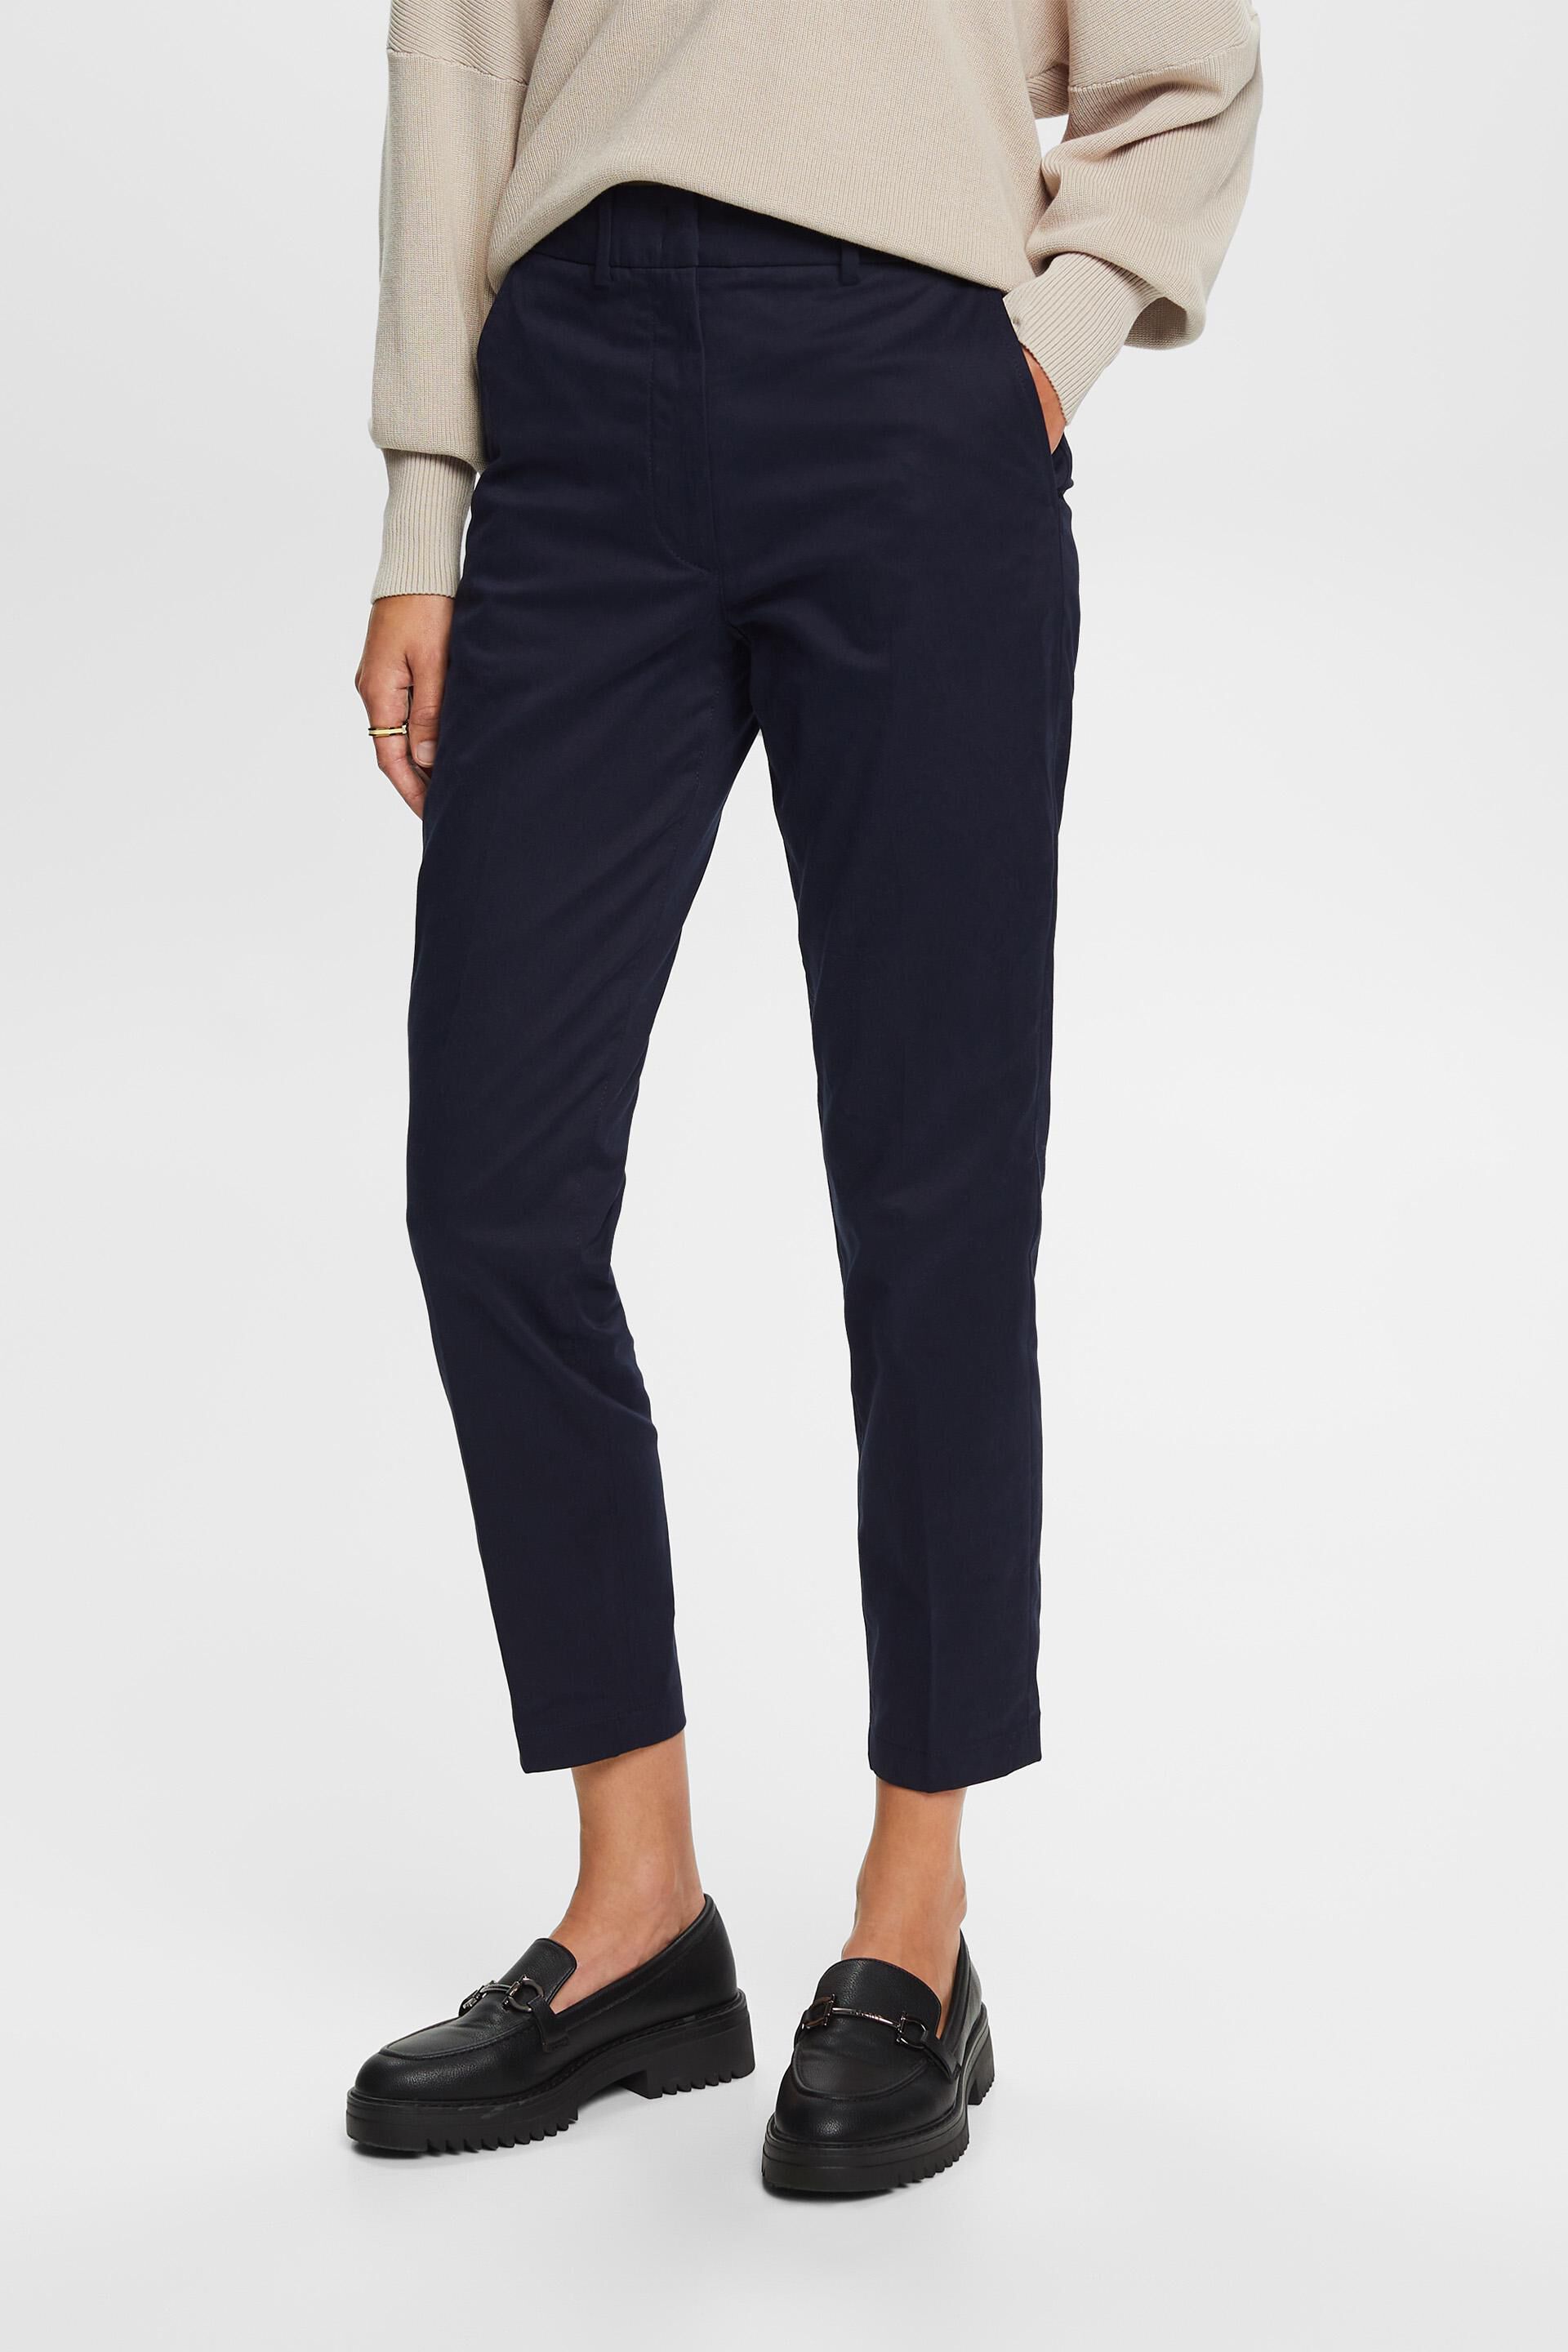 Esprit Damen High-Rise Slim Fit Trousers